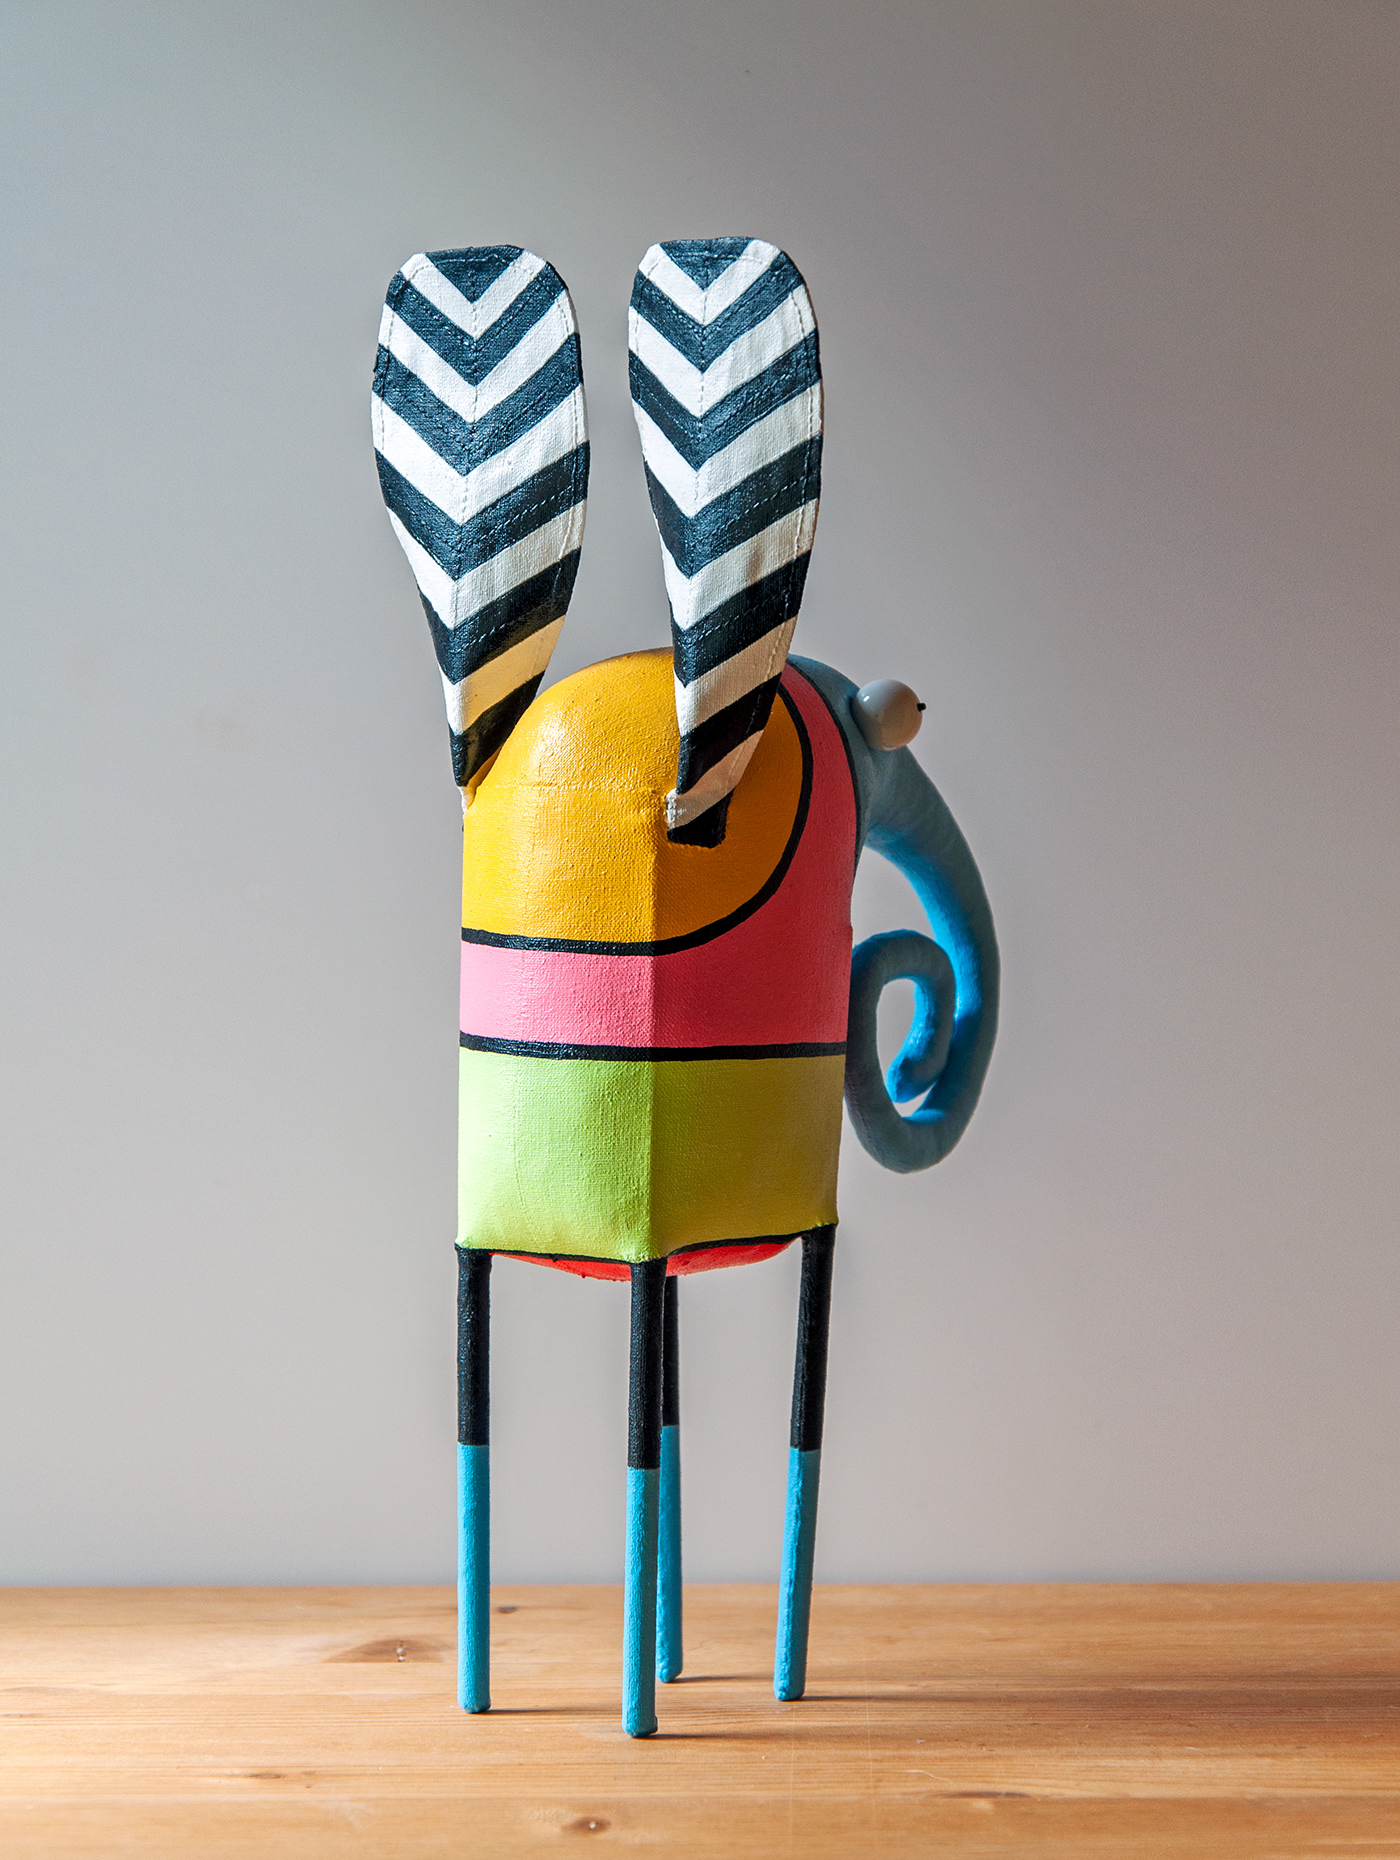 Character design  colorful concept art elephant home decor painting   Pop Art sculpture art textile toy